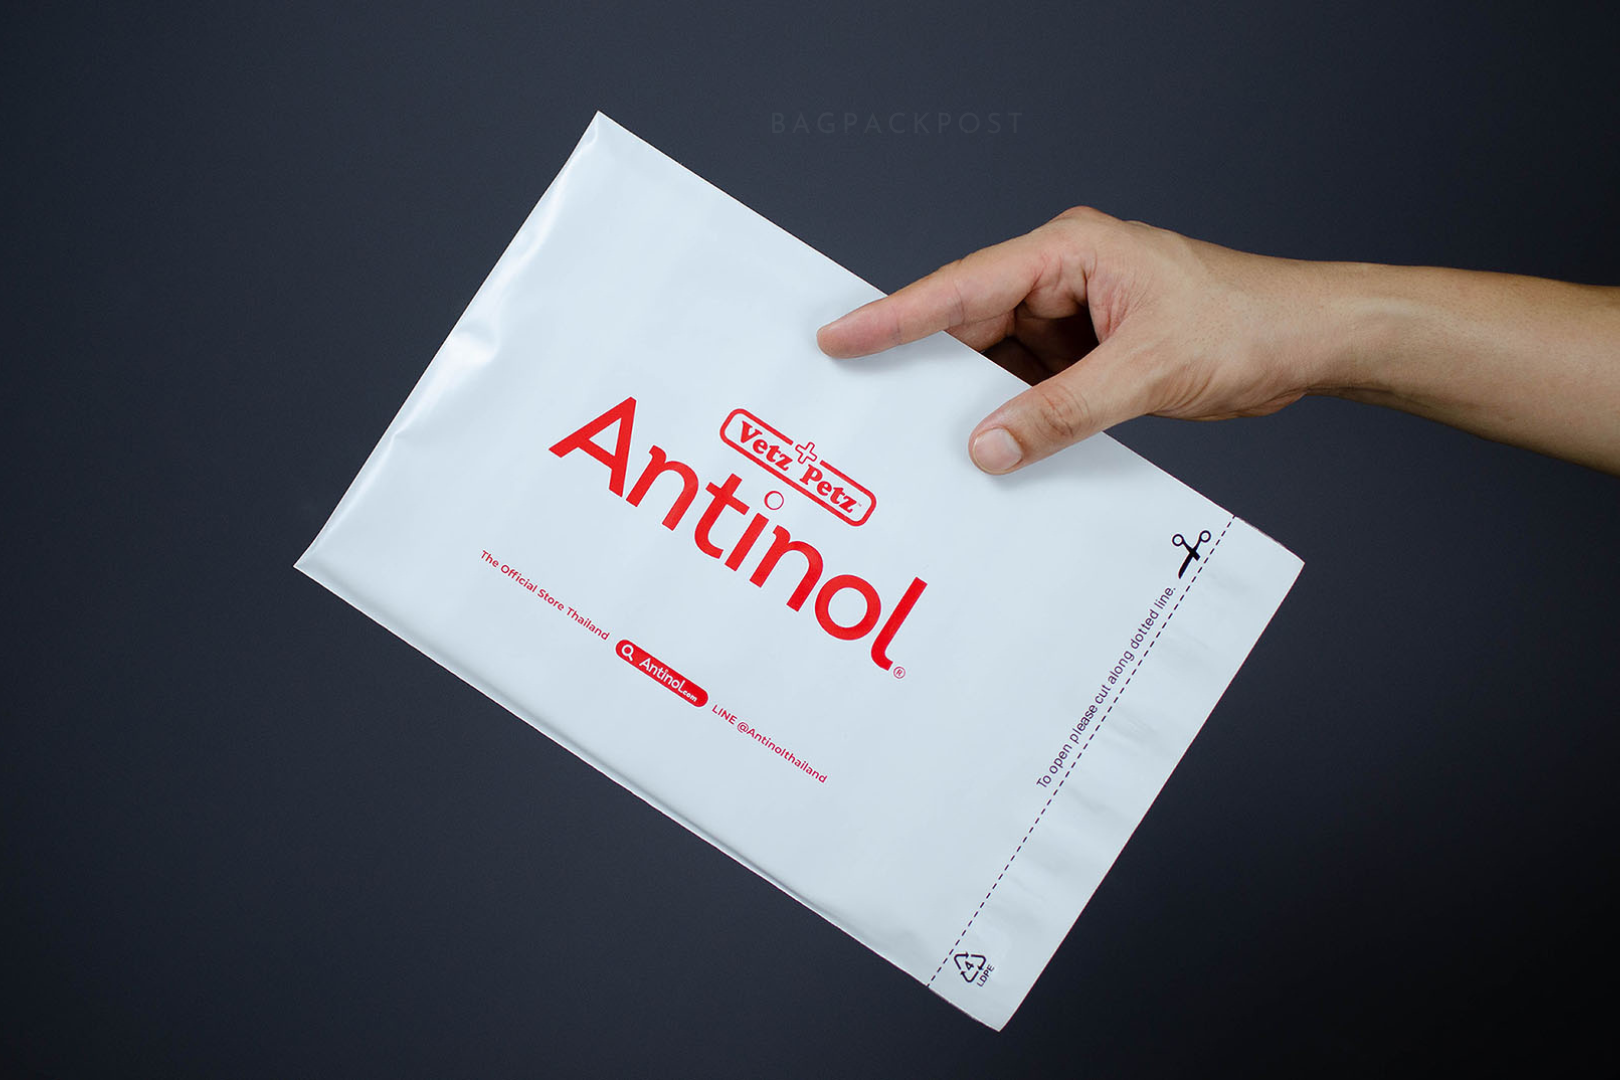 ซองไปรษณีย์พิมพ์ลาย Antinol ซองไปรษณีย์สีขาว ถุงไปรษณีย์พิมพ์ลาย 2 BagPackPost